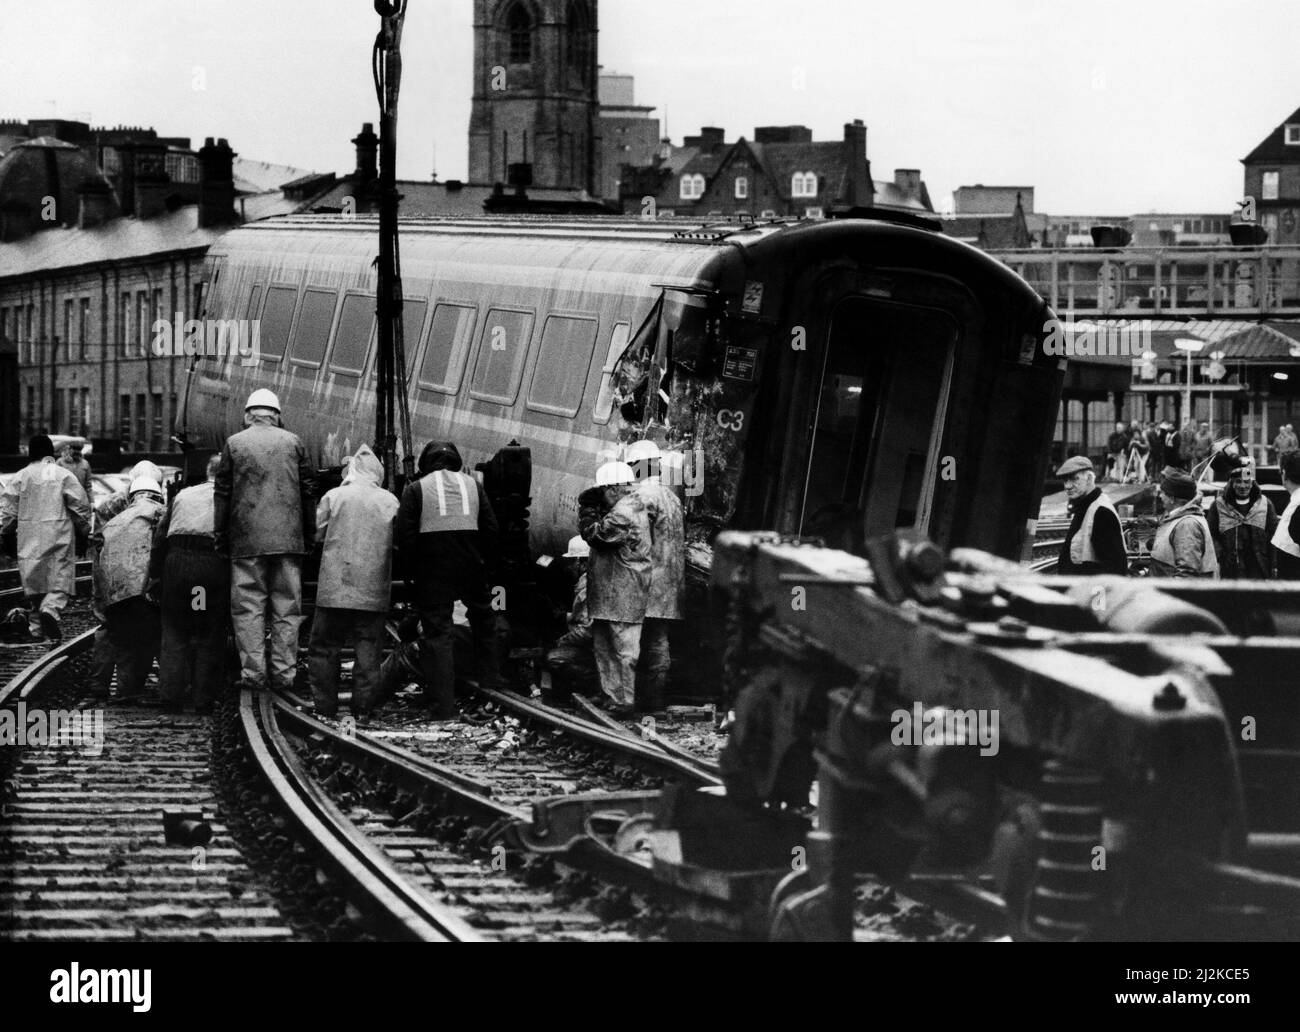 Dreizehn Menschen wurden verletzt und Hunderte weitere Personen führten am 30.. November 1988 nach einem Zusammenstoß zweier Inter-City 125-Züge zur Sicherheit von einer Brücke über den Fluss Tyne. Der Unfall ereignete sich auf der Nordanfahrt zur King Edwar Bridge 100 Fuß über dem Fluss, als sich ein Zug vorbereitete, den Hauptbahnhof von Newcastle zu betreten, und der andere sich herauszog. Dutzende von Arbeitern versuchen, die Spur zu räumen Stockfoto